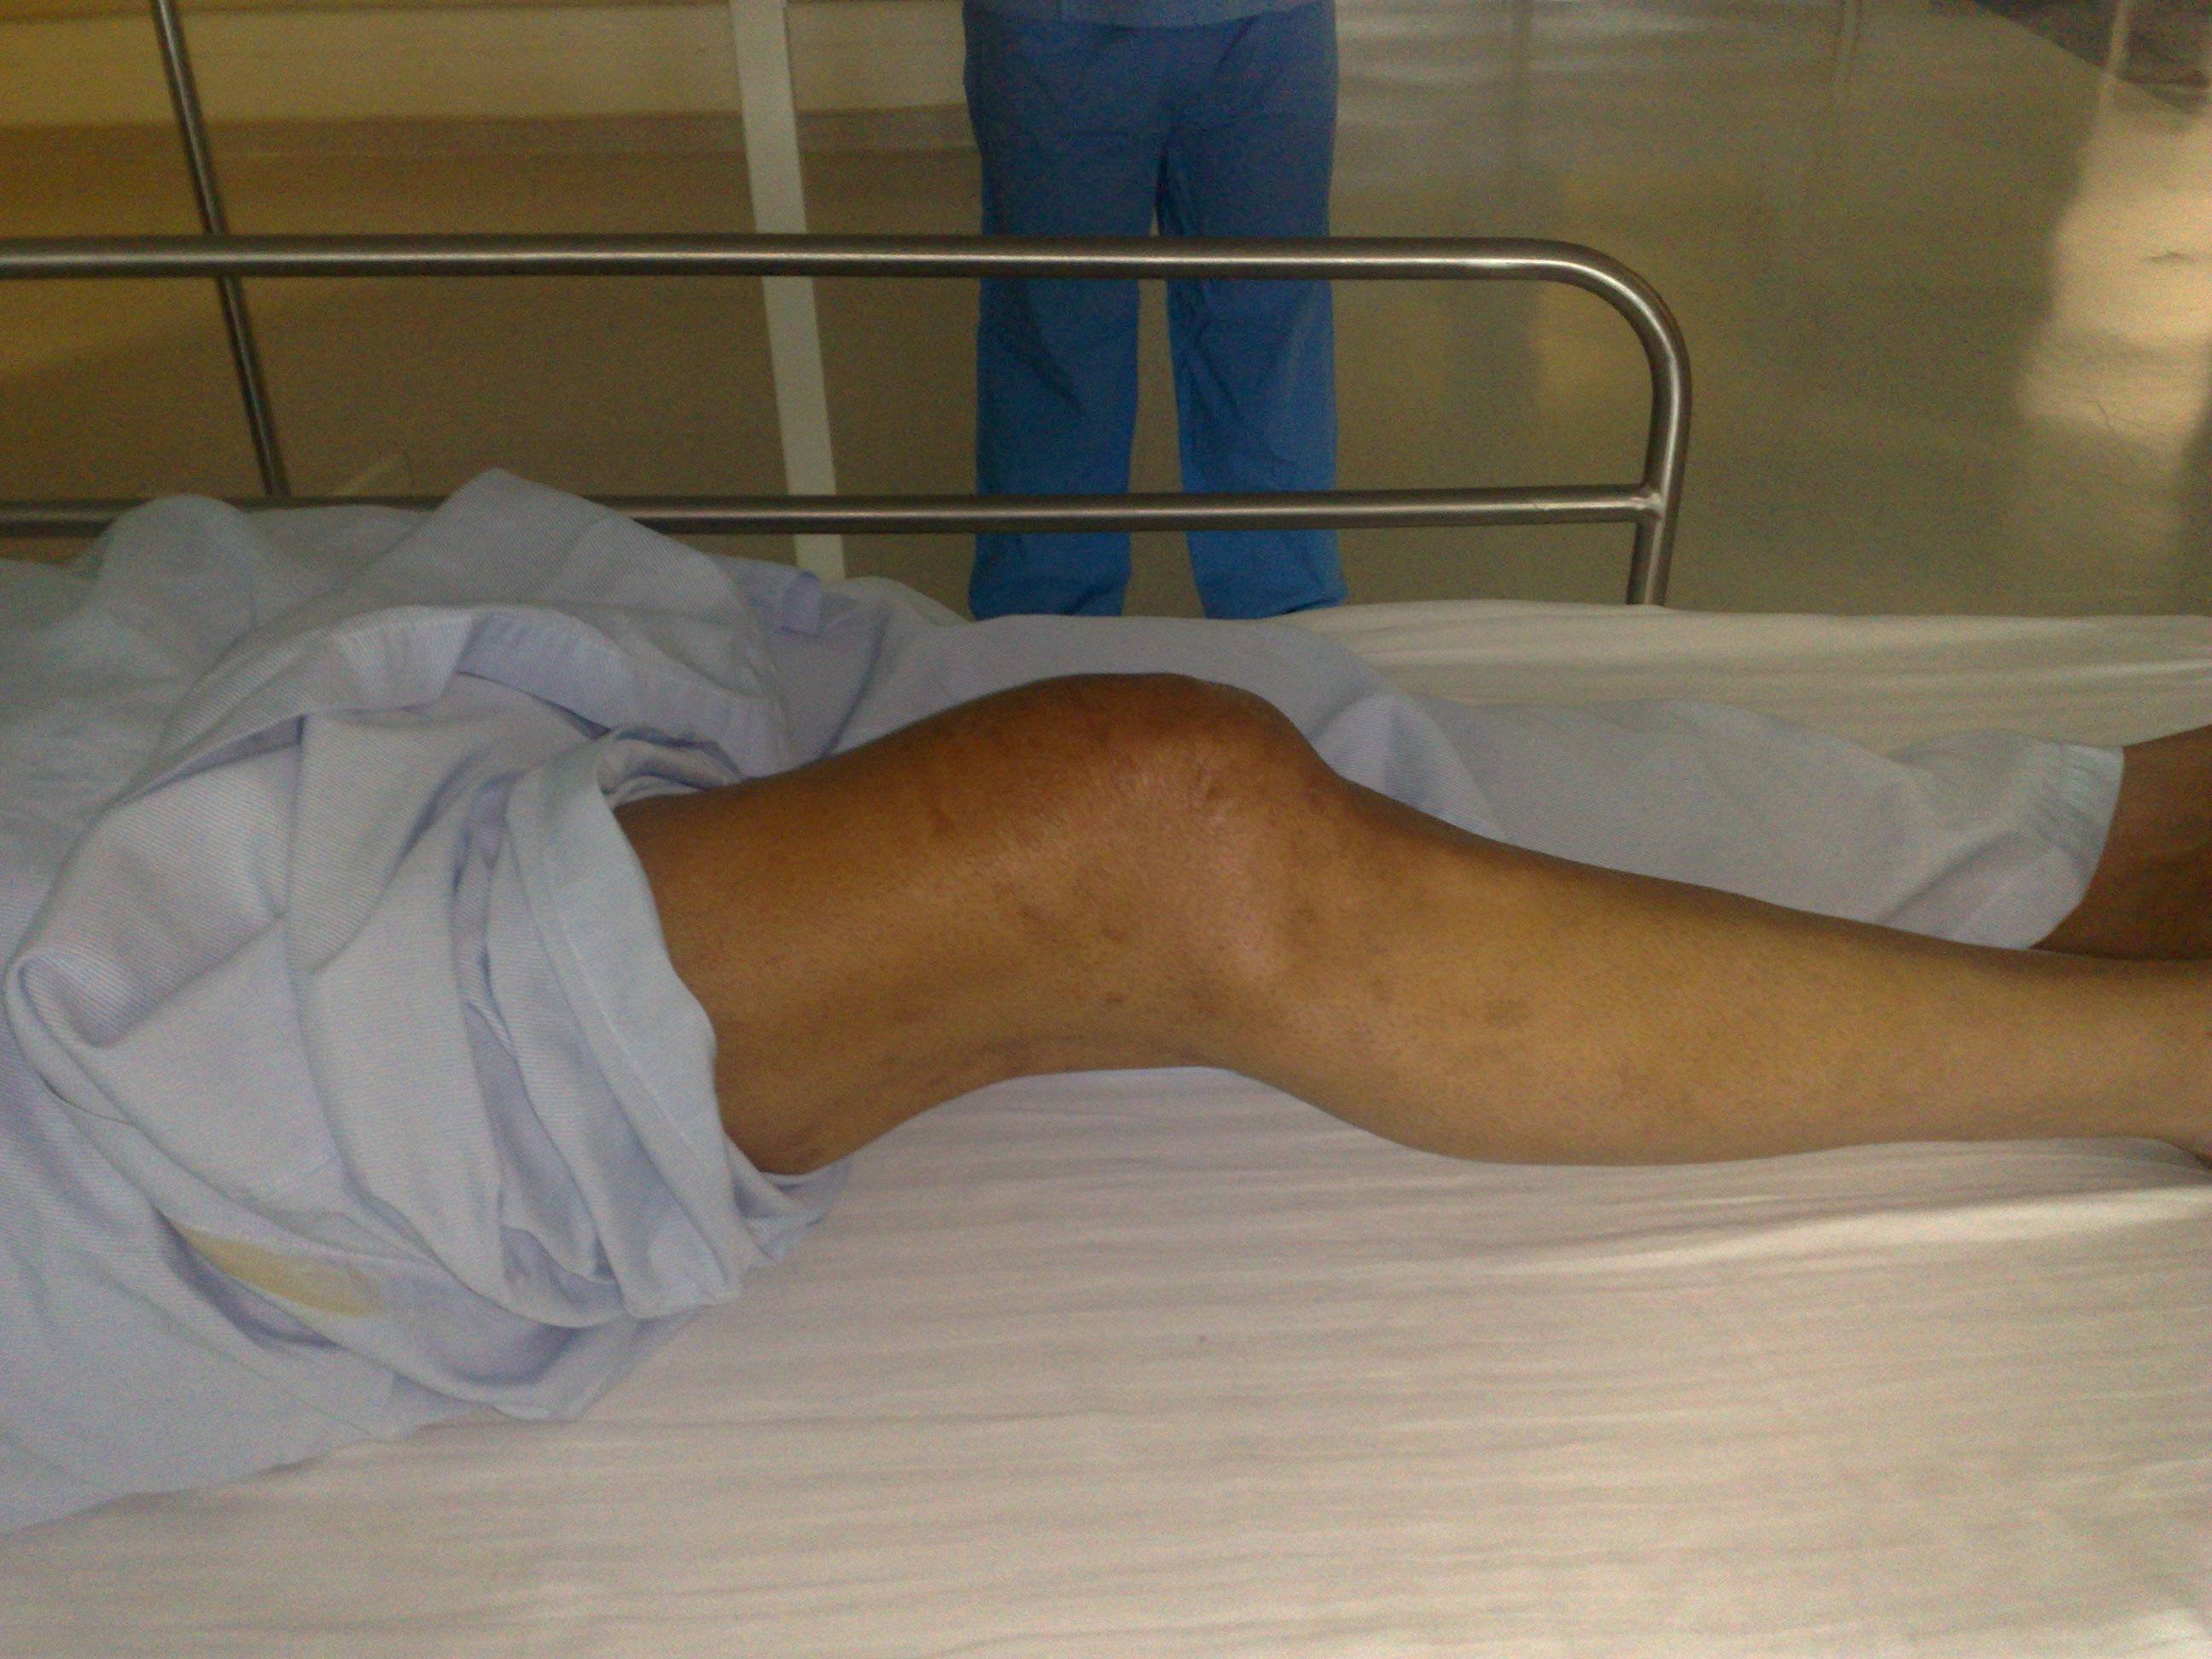 Flexion deformity of the knee